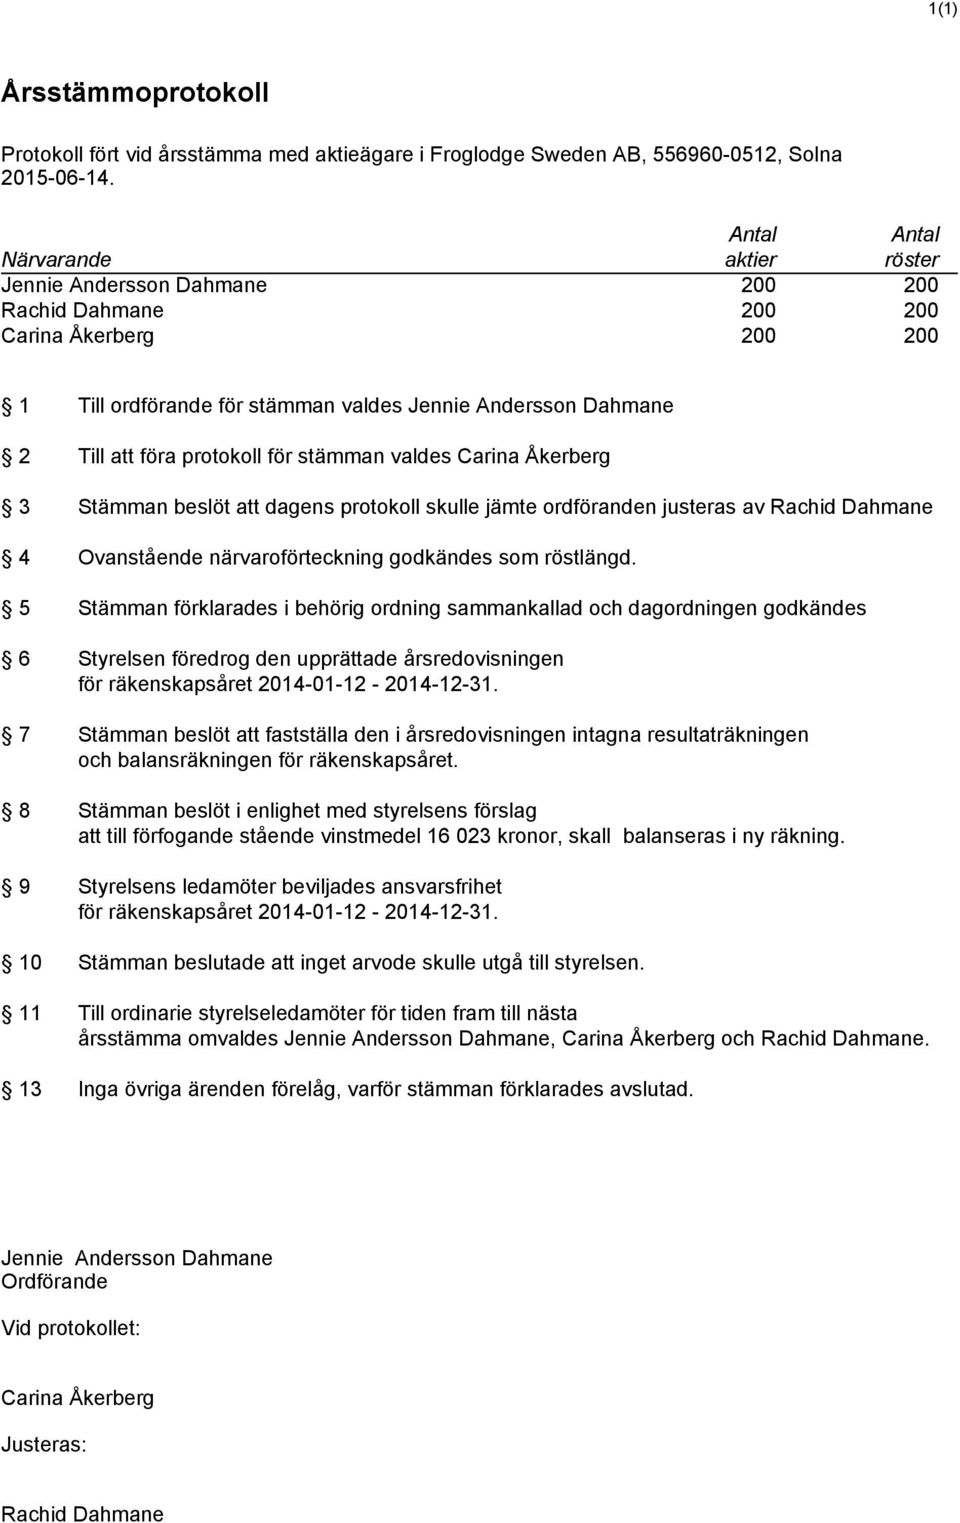 protokoll för stämman valdes Carina Åkerberg 3 Stämman beslöt att dagens protokoll skulle jämte ordföranden justeras av Rachid Dahmane 4 Ovanstående närvaroförteckning godkändes som röstlängd.